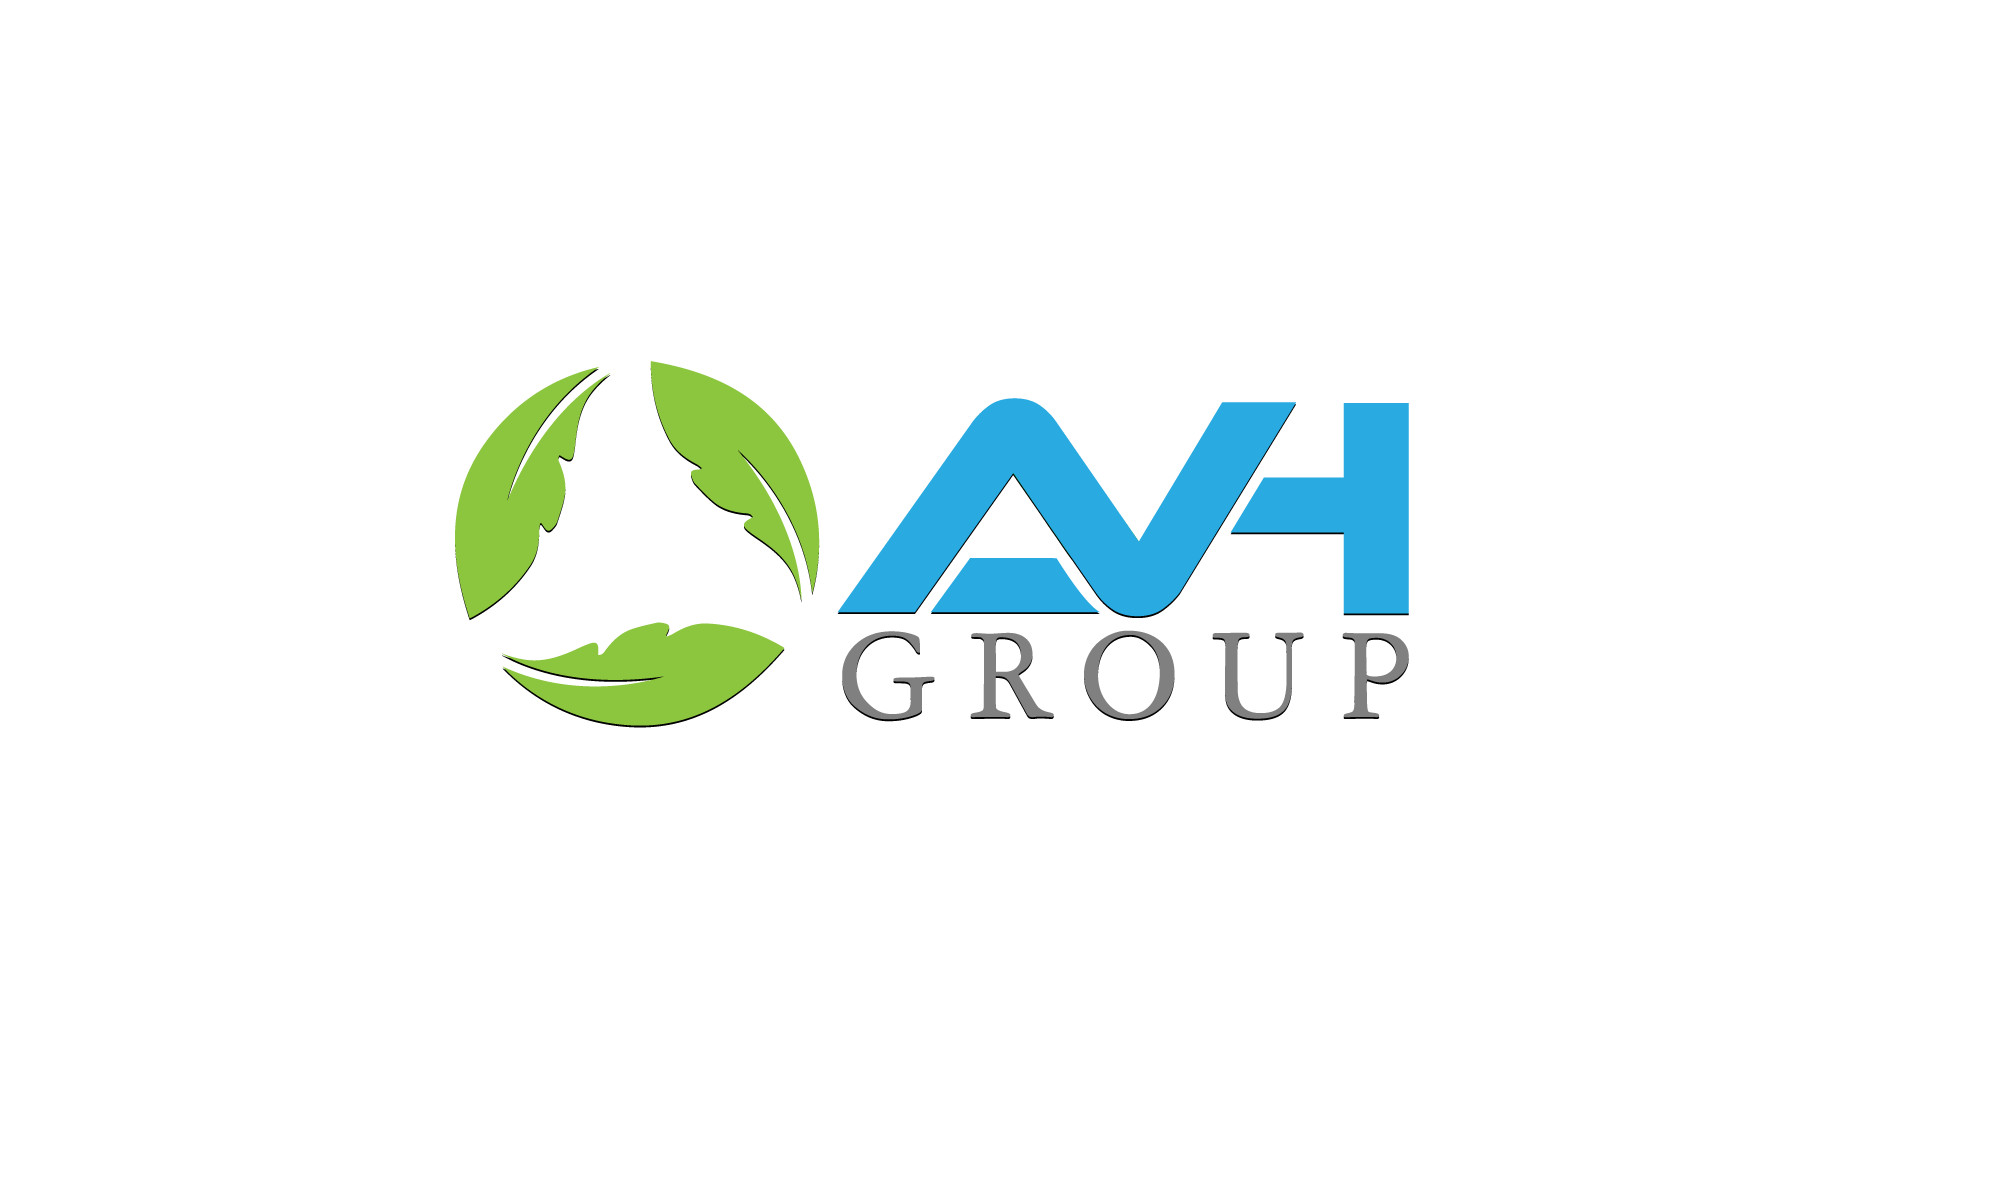 AVH Group